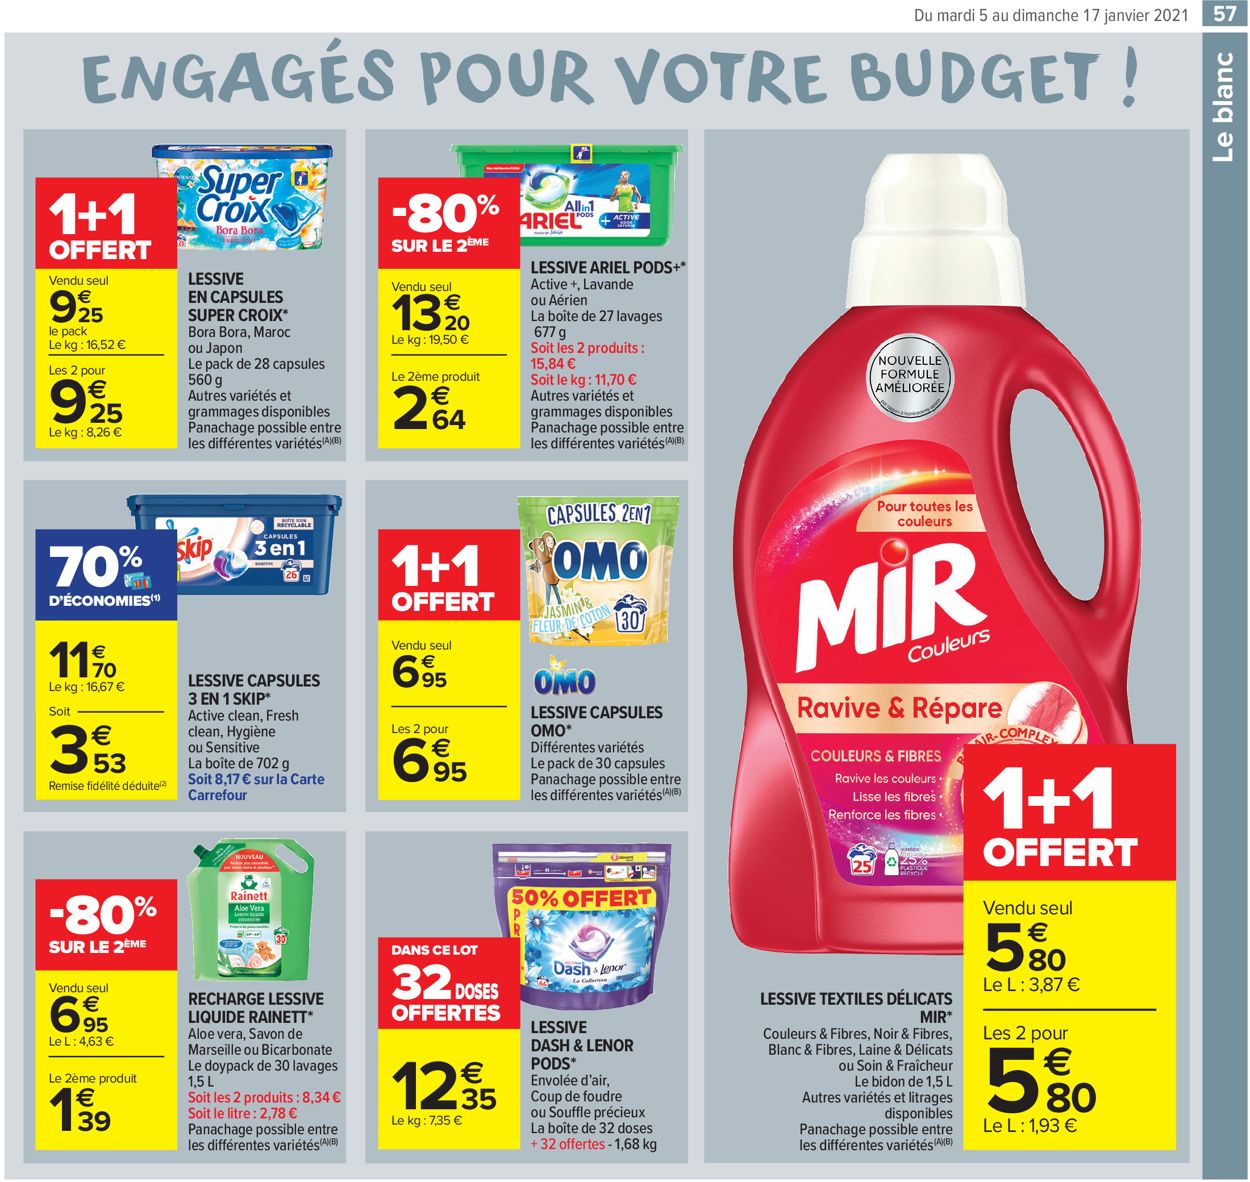 Carrefour Résolument engagés pour votre budget 2021 Catalogue - 05.01-17.01.2021 (Page 57)